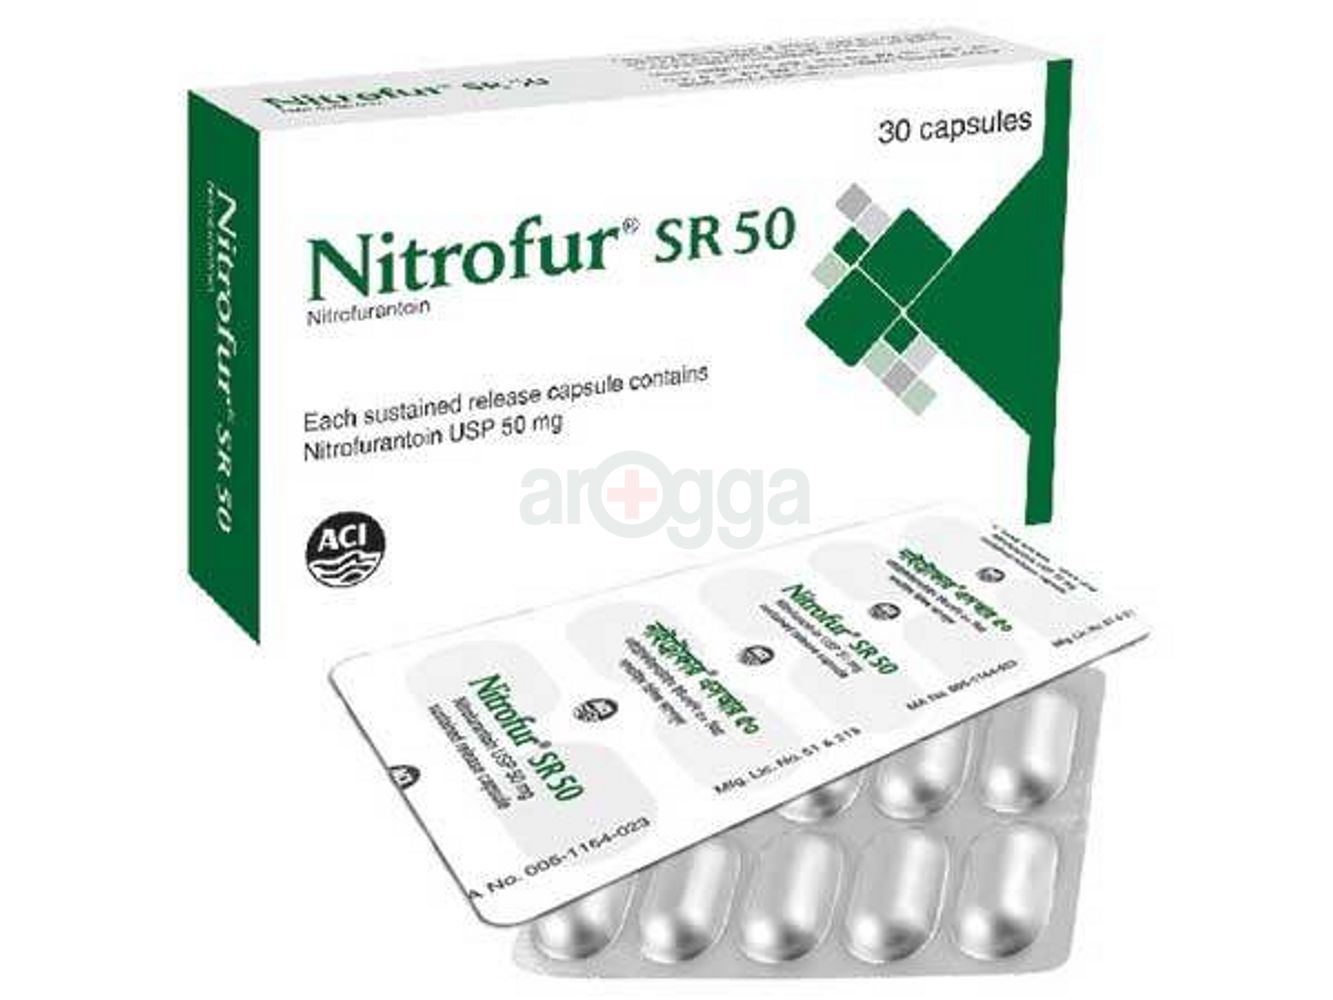 Nitrofur SR 50